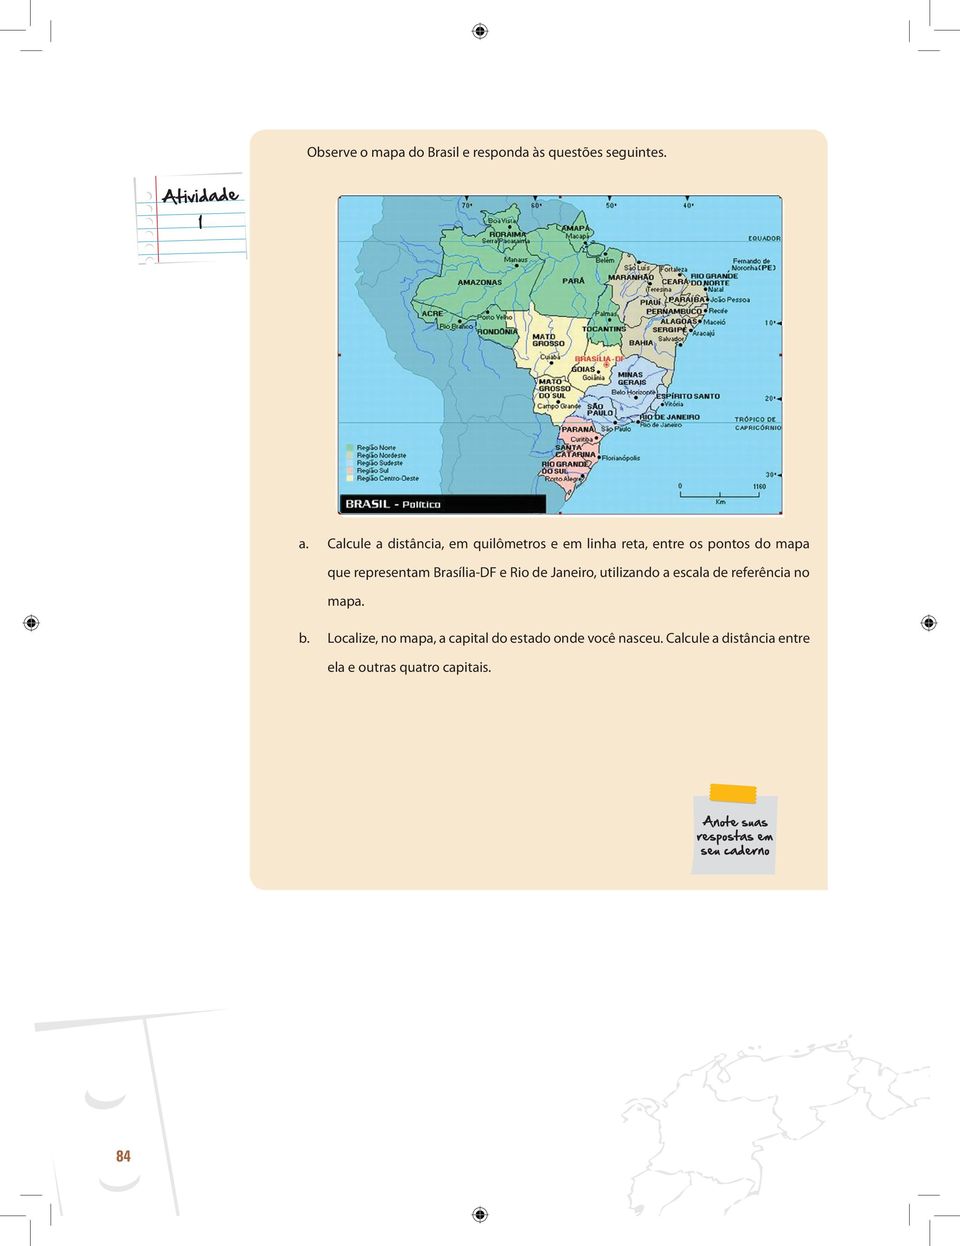 representam Brasília-DF e Rio de Janeiro, utilizando a escala de referência no mapa. b.